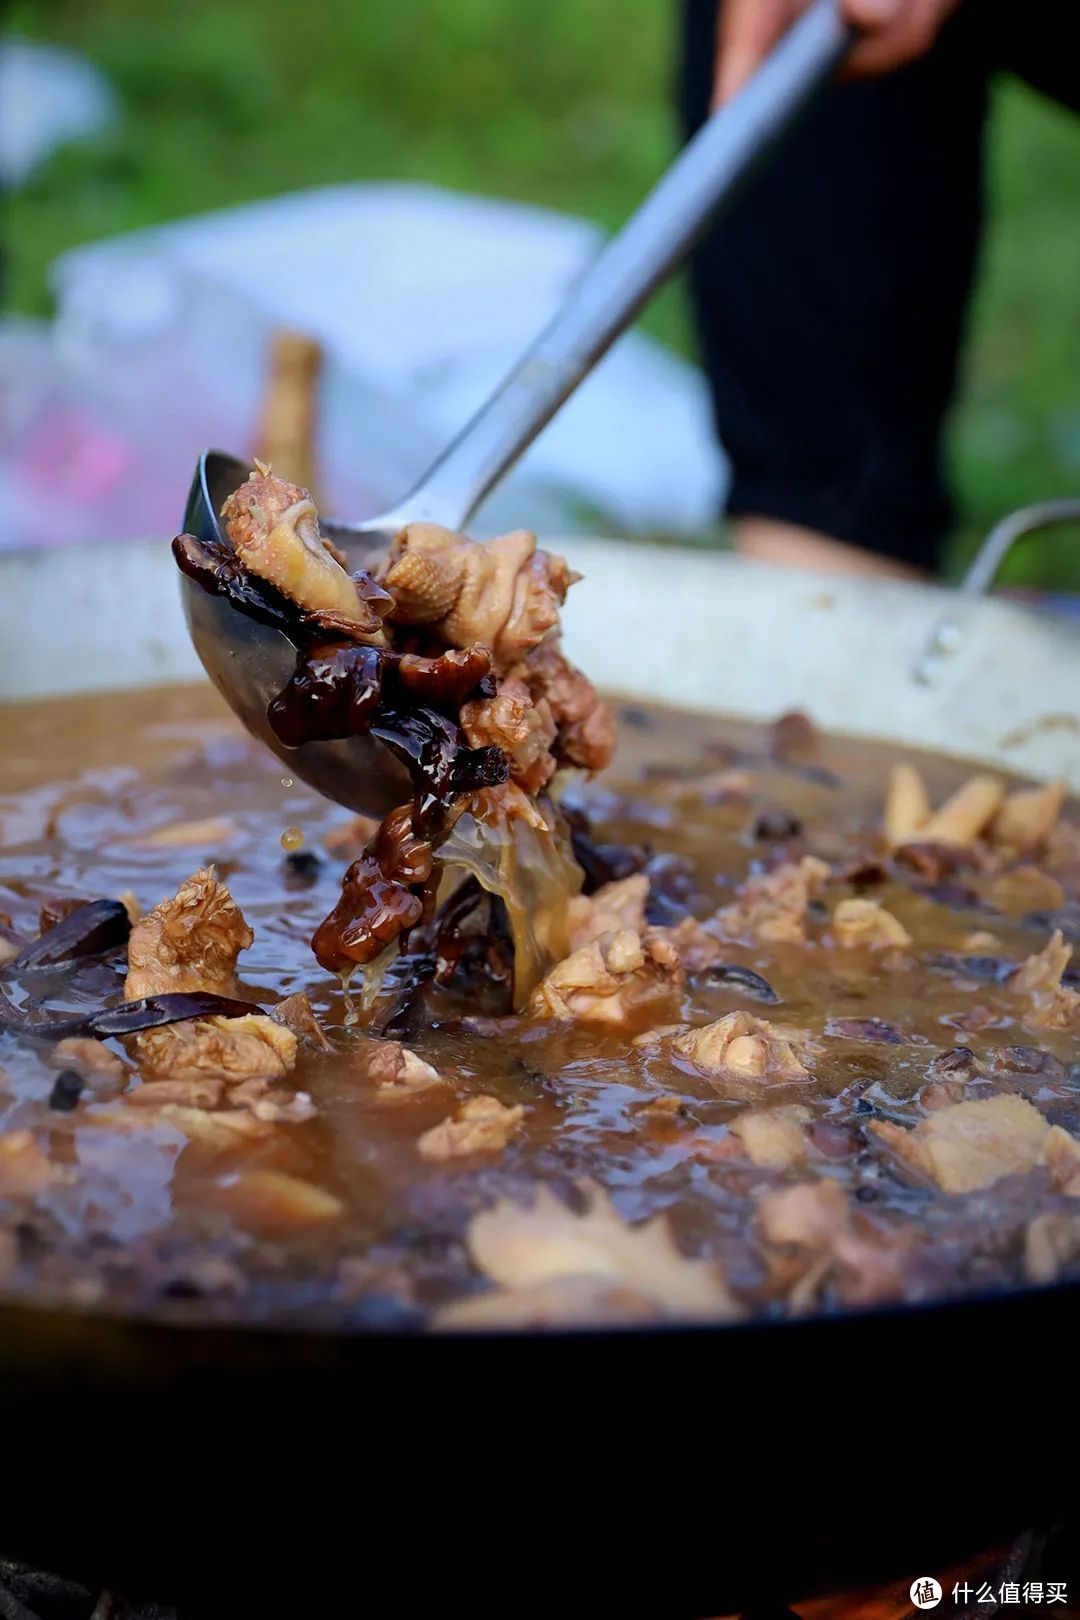 以榛蘑为食材的小鸡炖蘑菇是经典的东北料理。©图虫创意